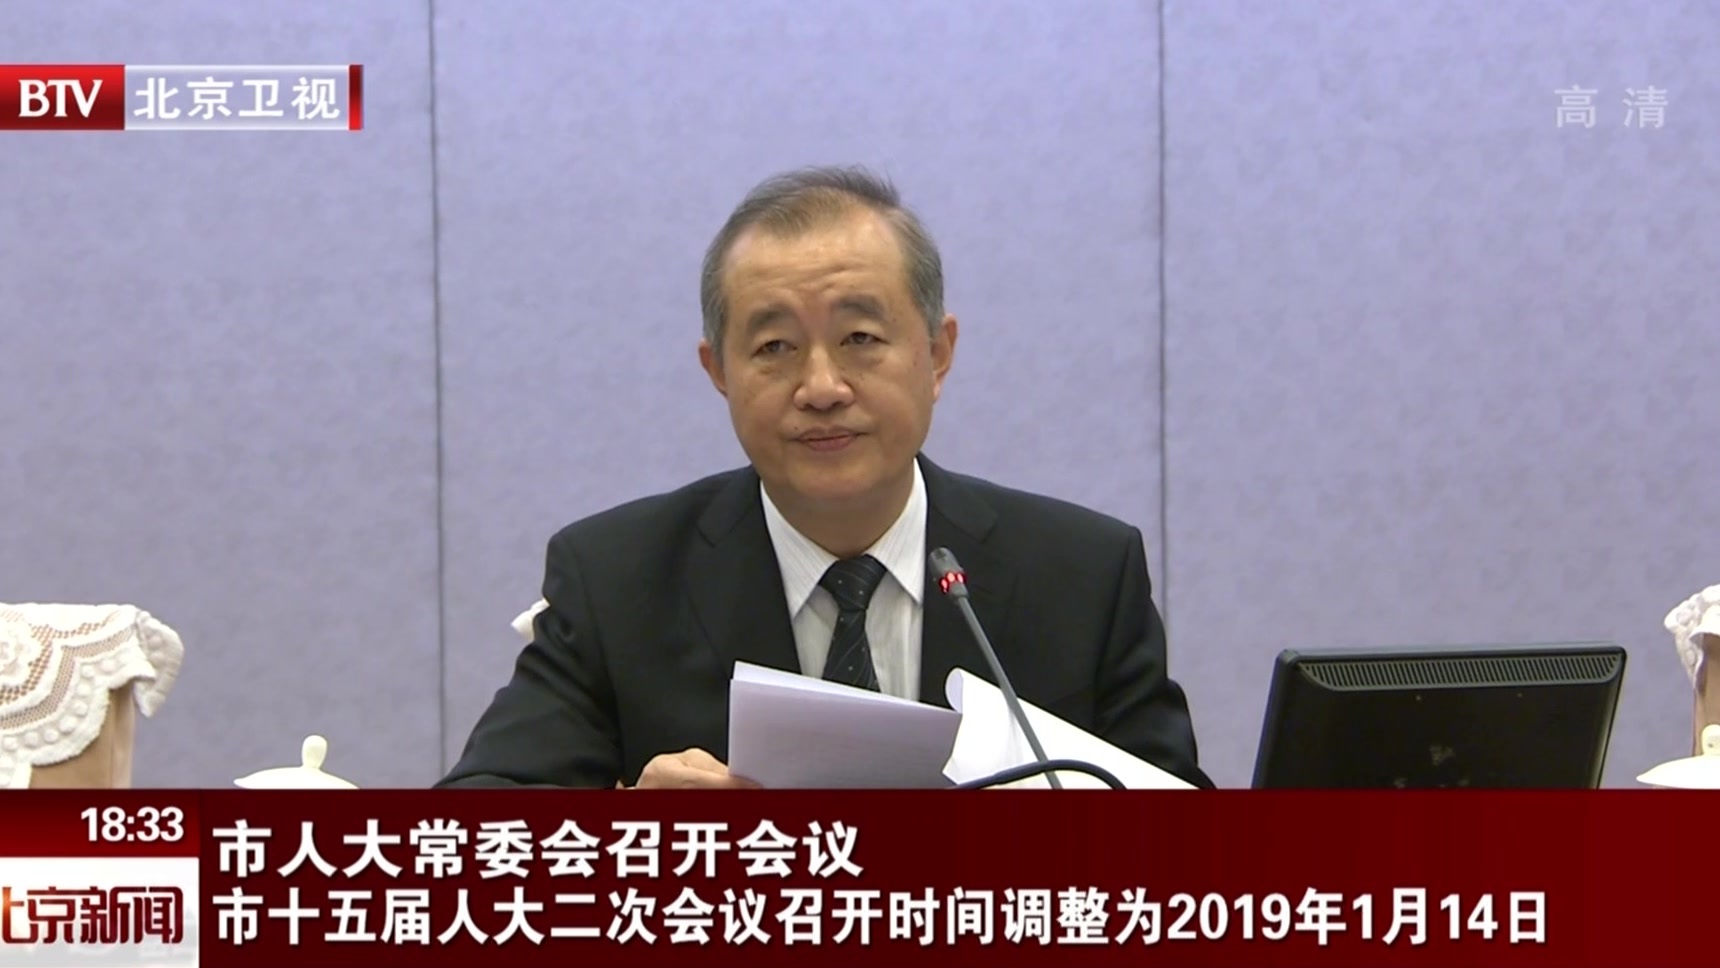 北京市人大常委会召开会议 市十五届人大二次会议召开时间调整为2019年1月14日